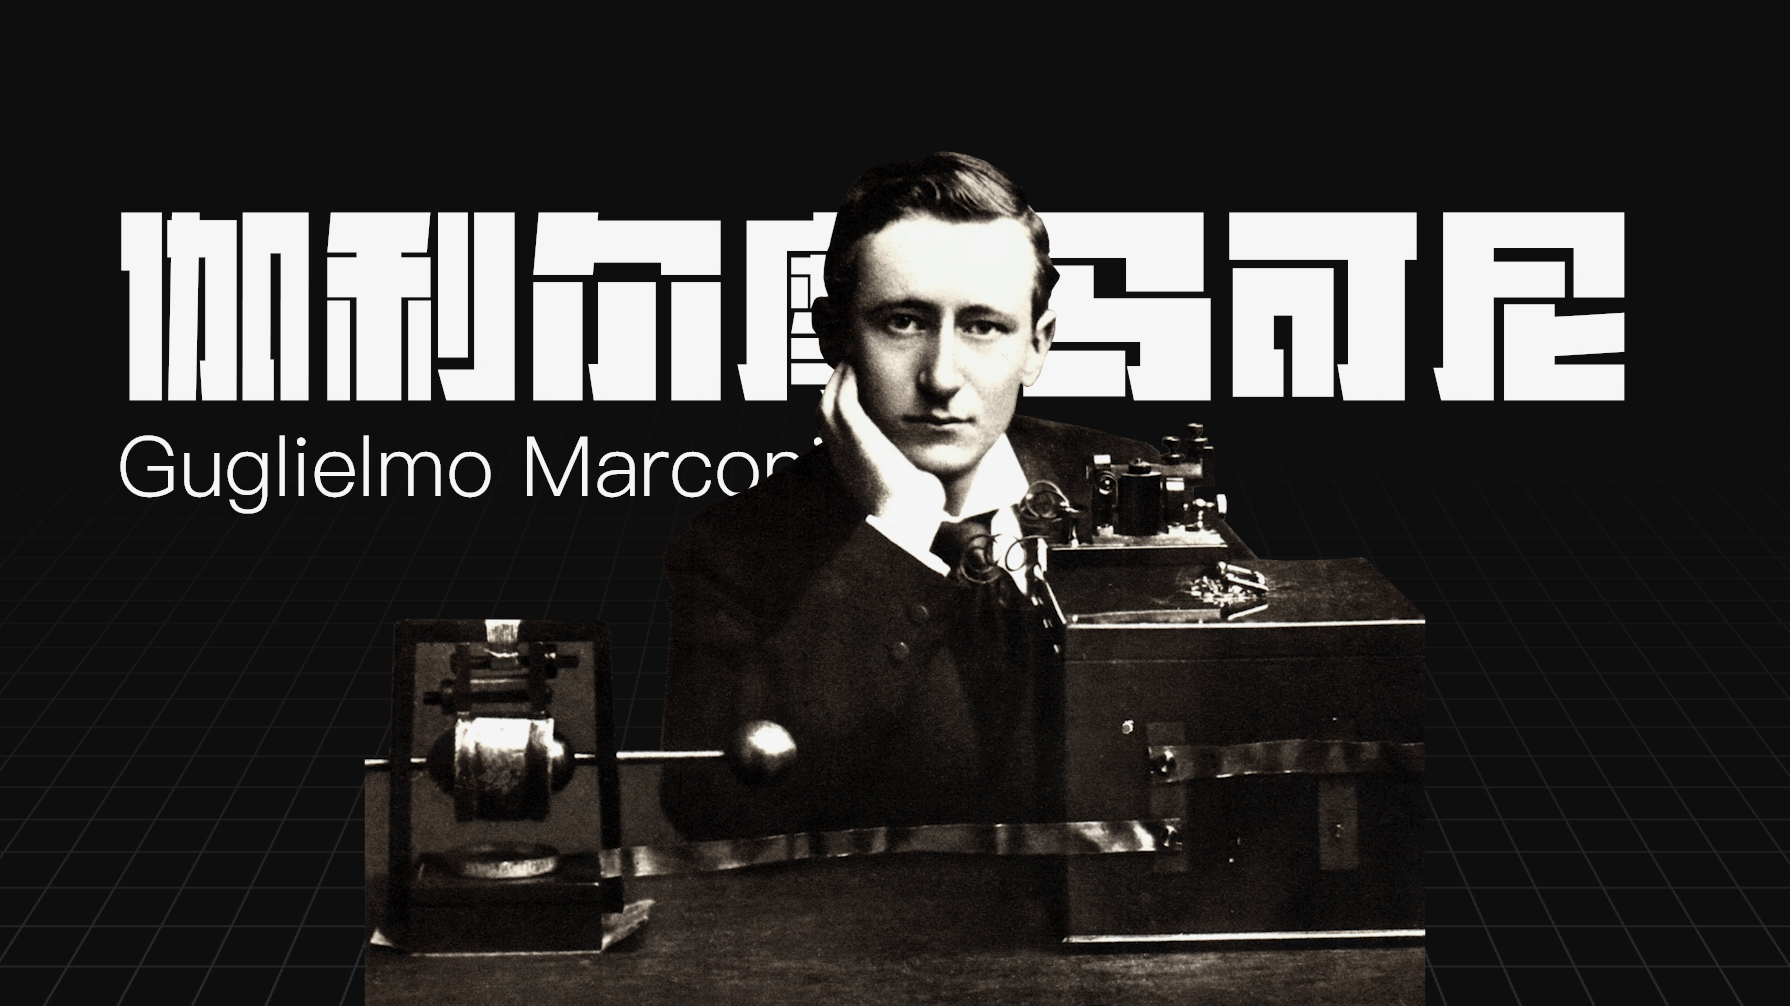 除了留声机这条主线之外,意大利人马可尼也在同一时期发明了使用无线